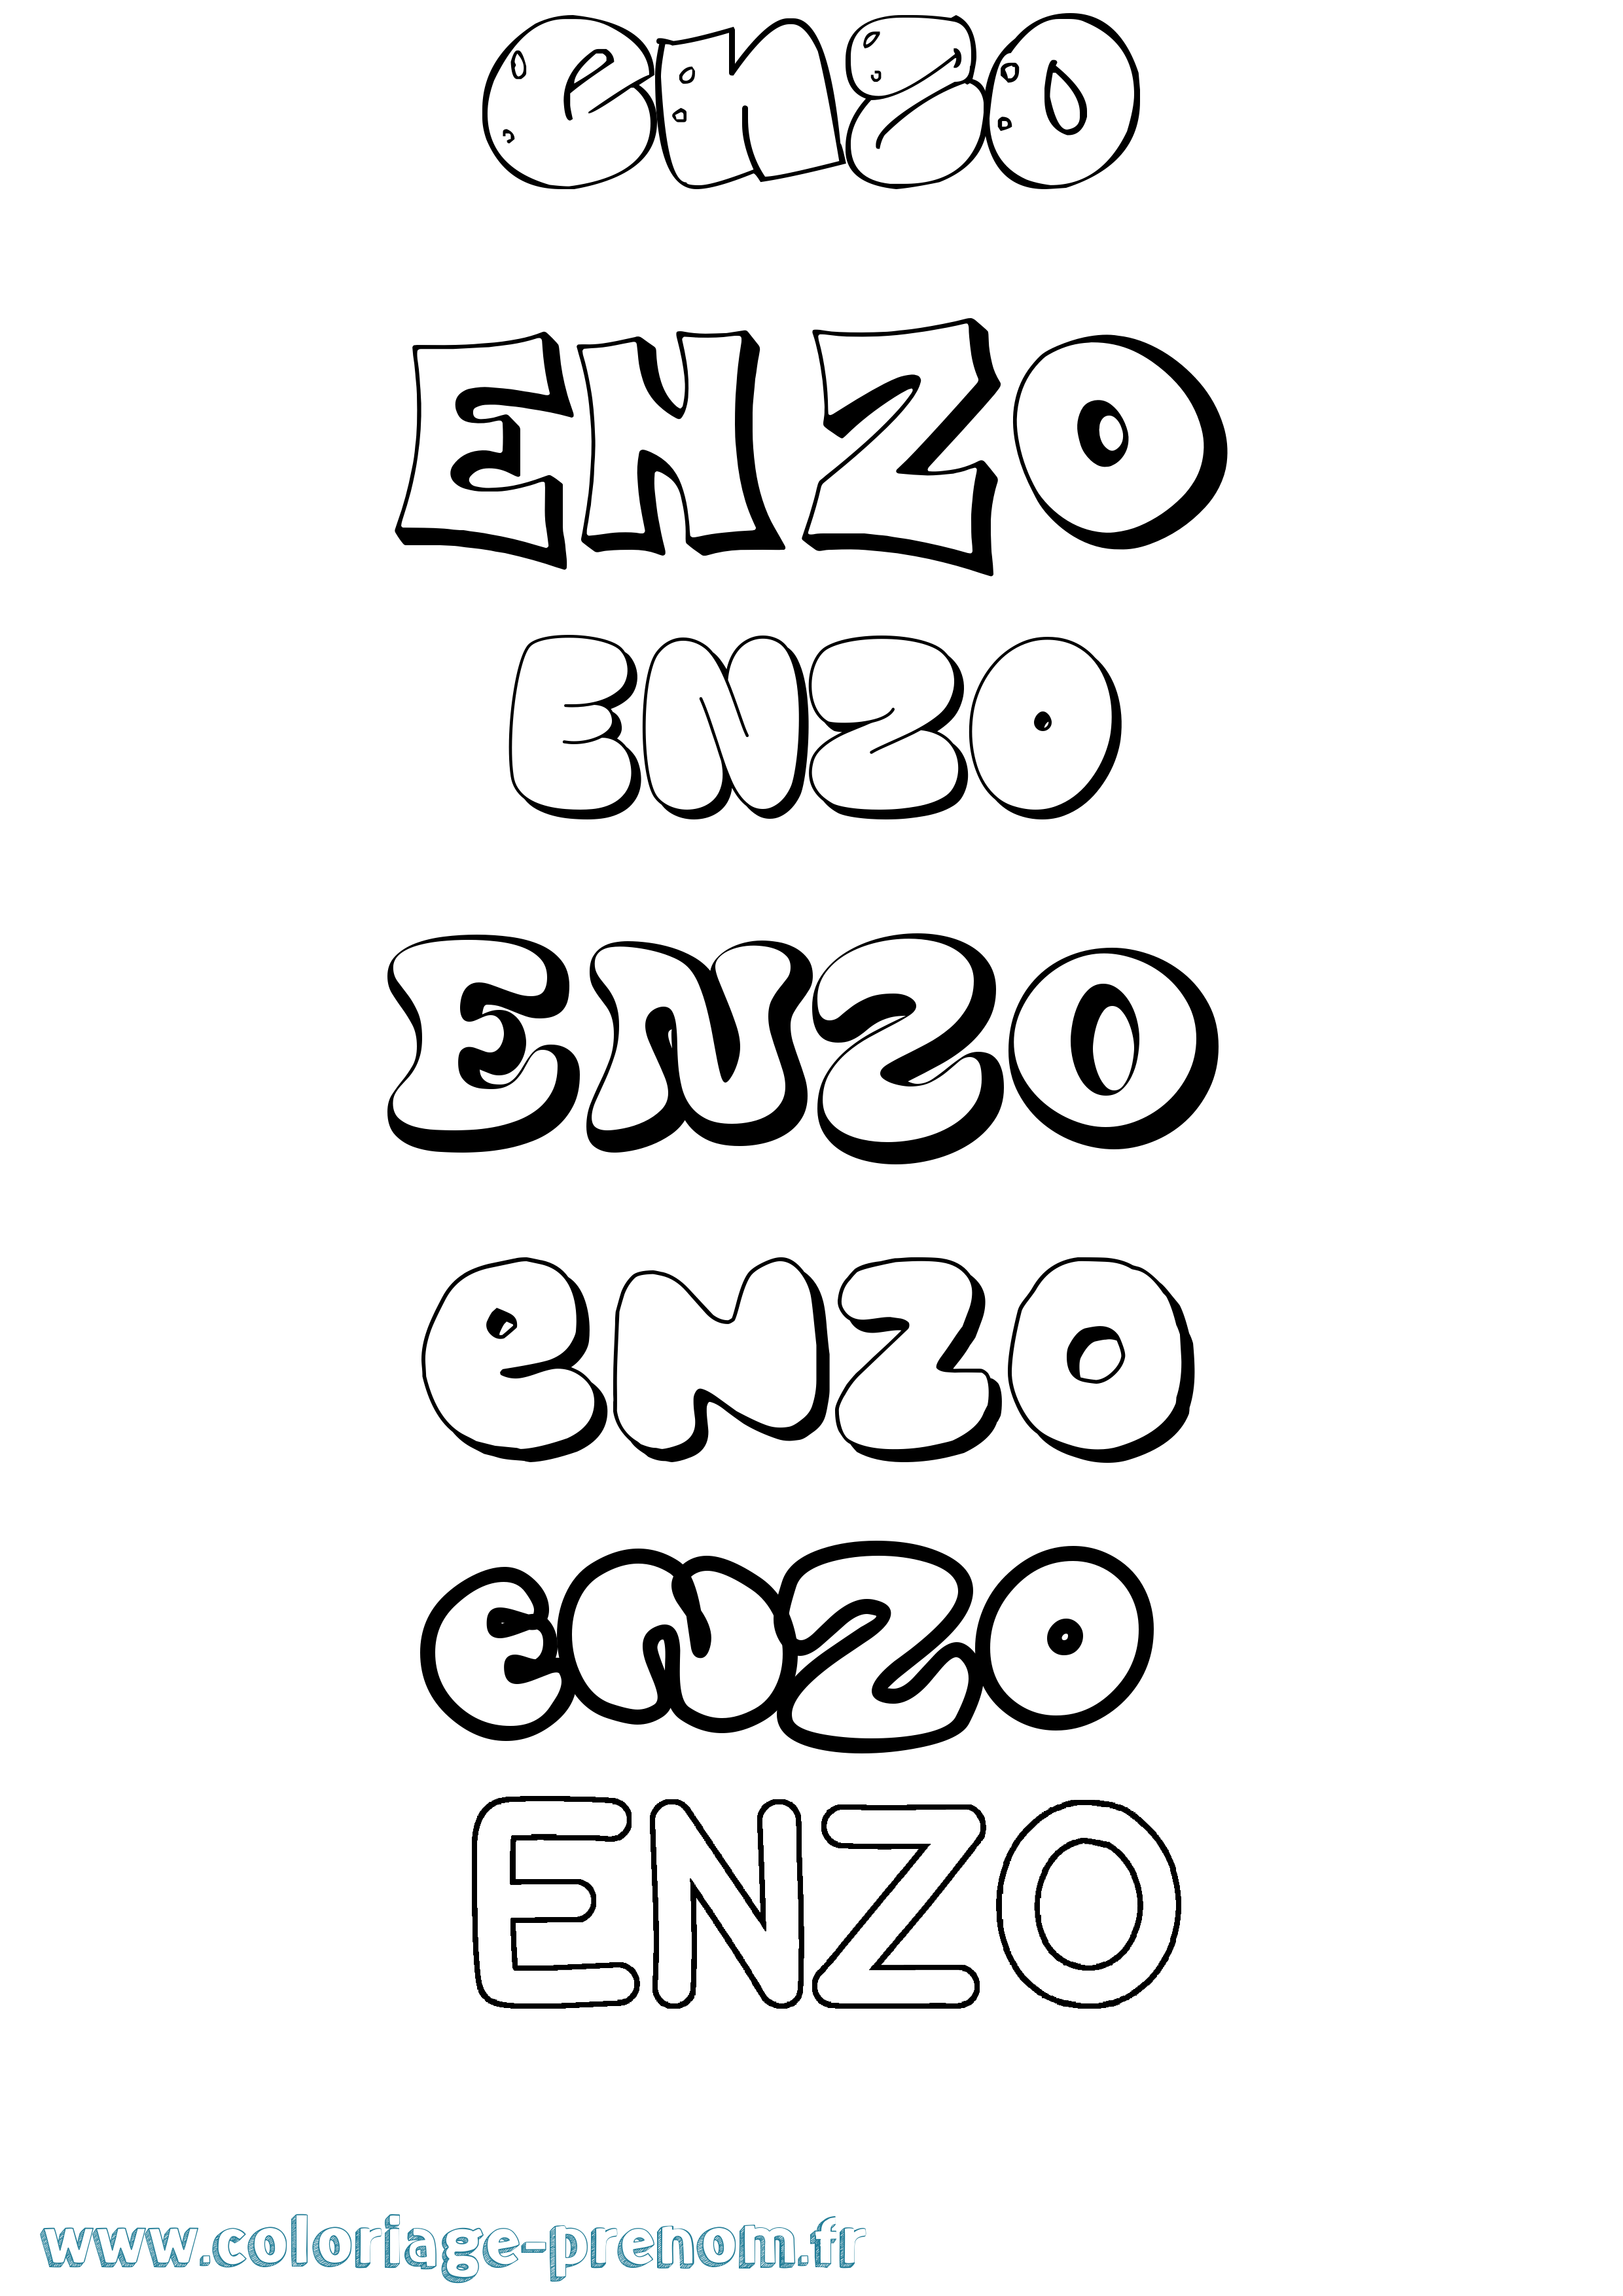 Coloriage prénom Enzo Bubble